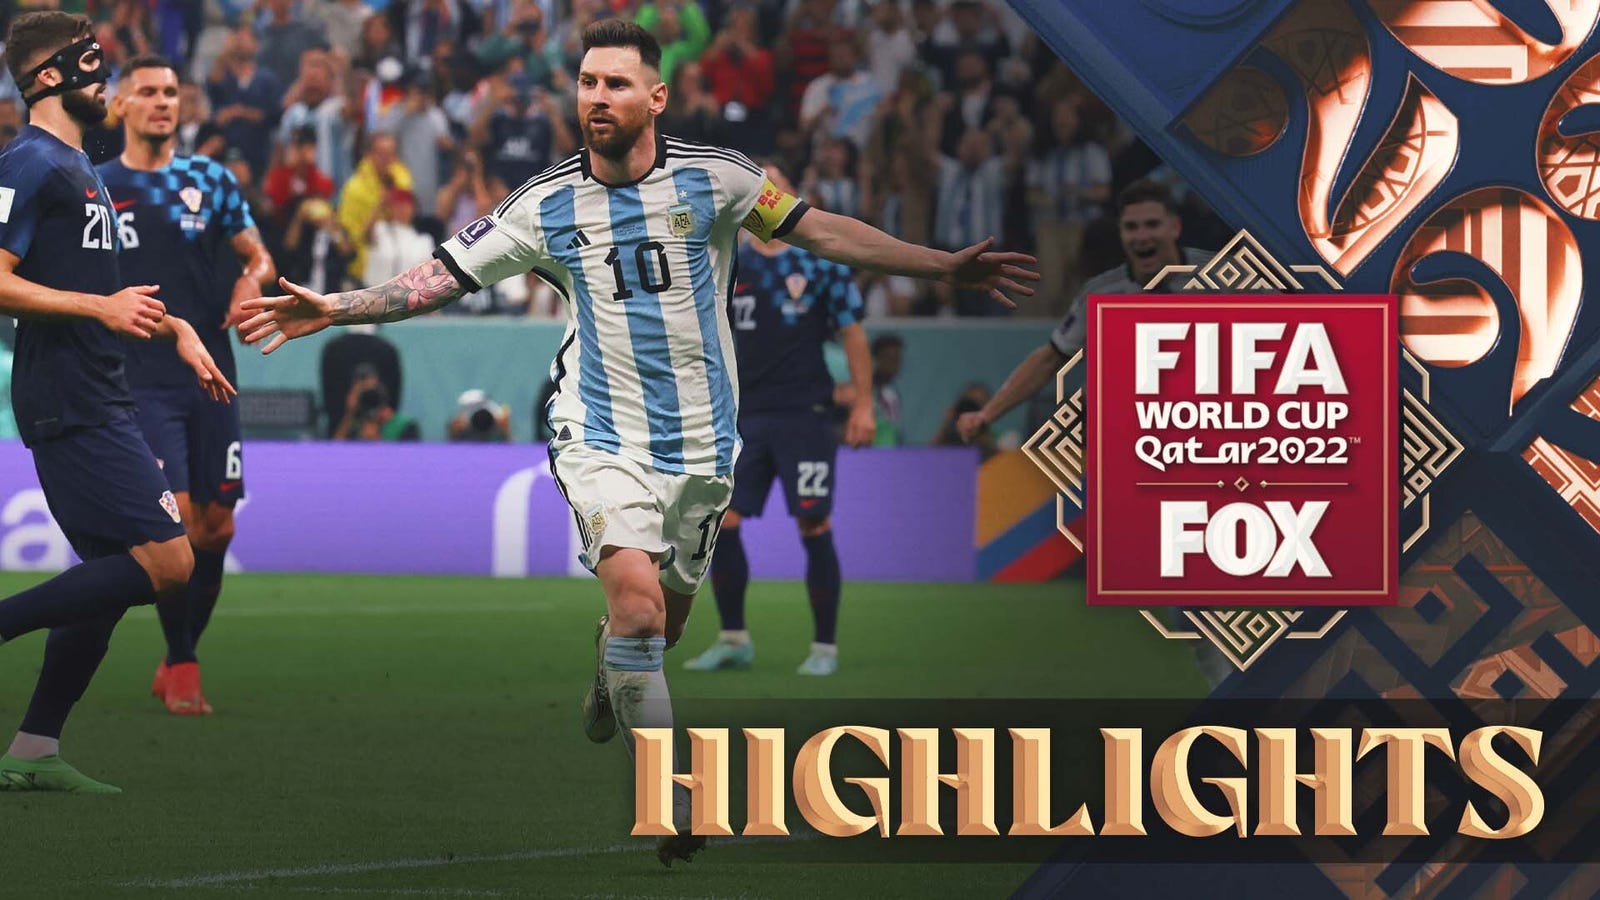 Highlights of Argentina vs Croatia